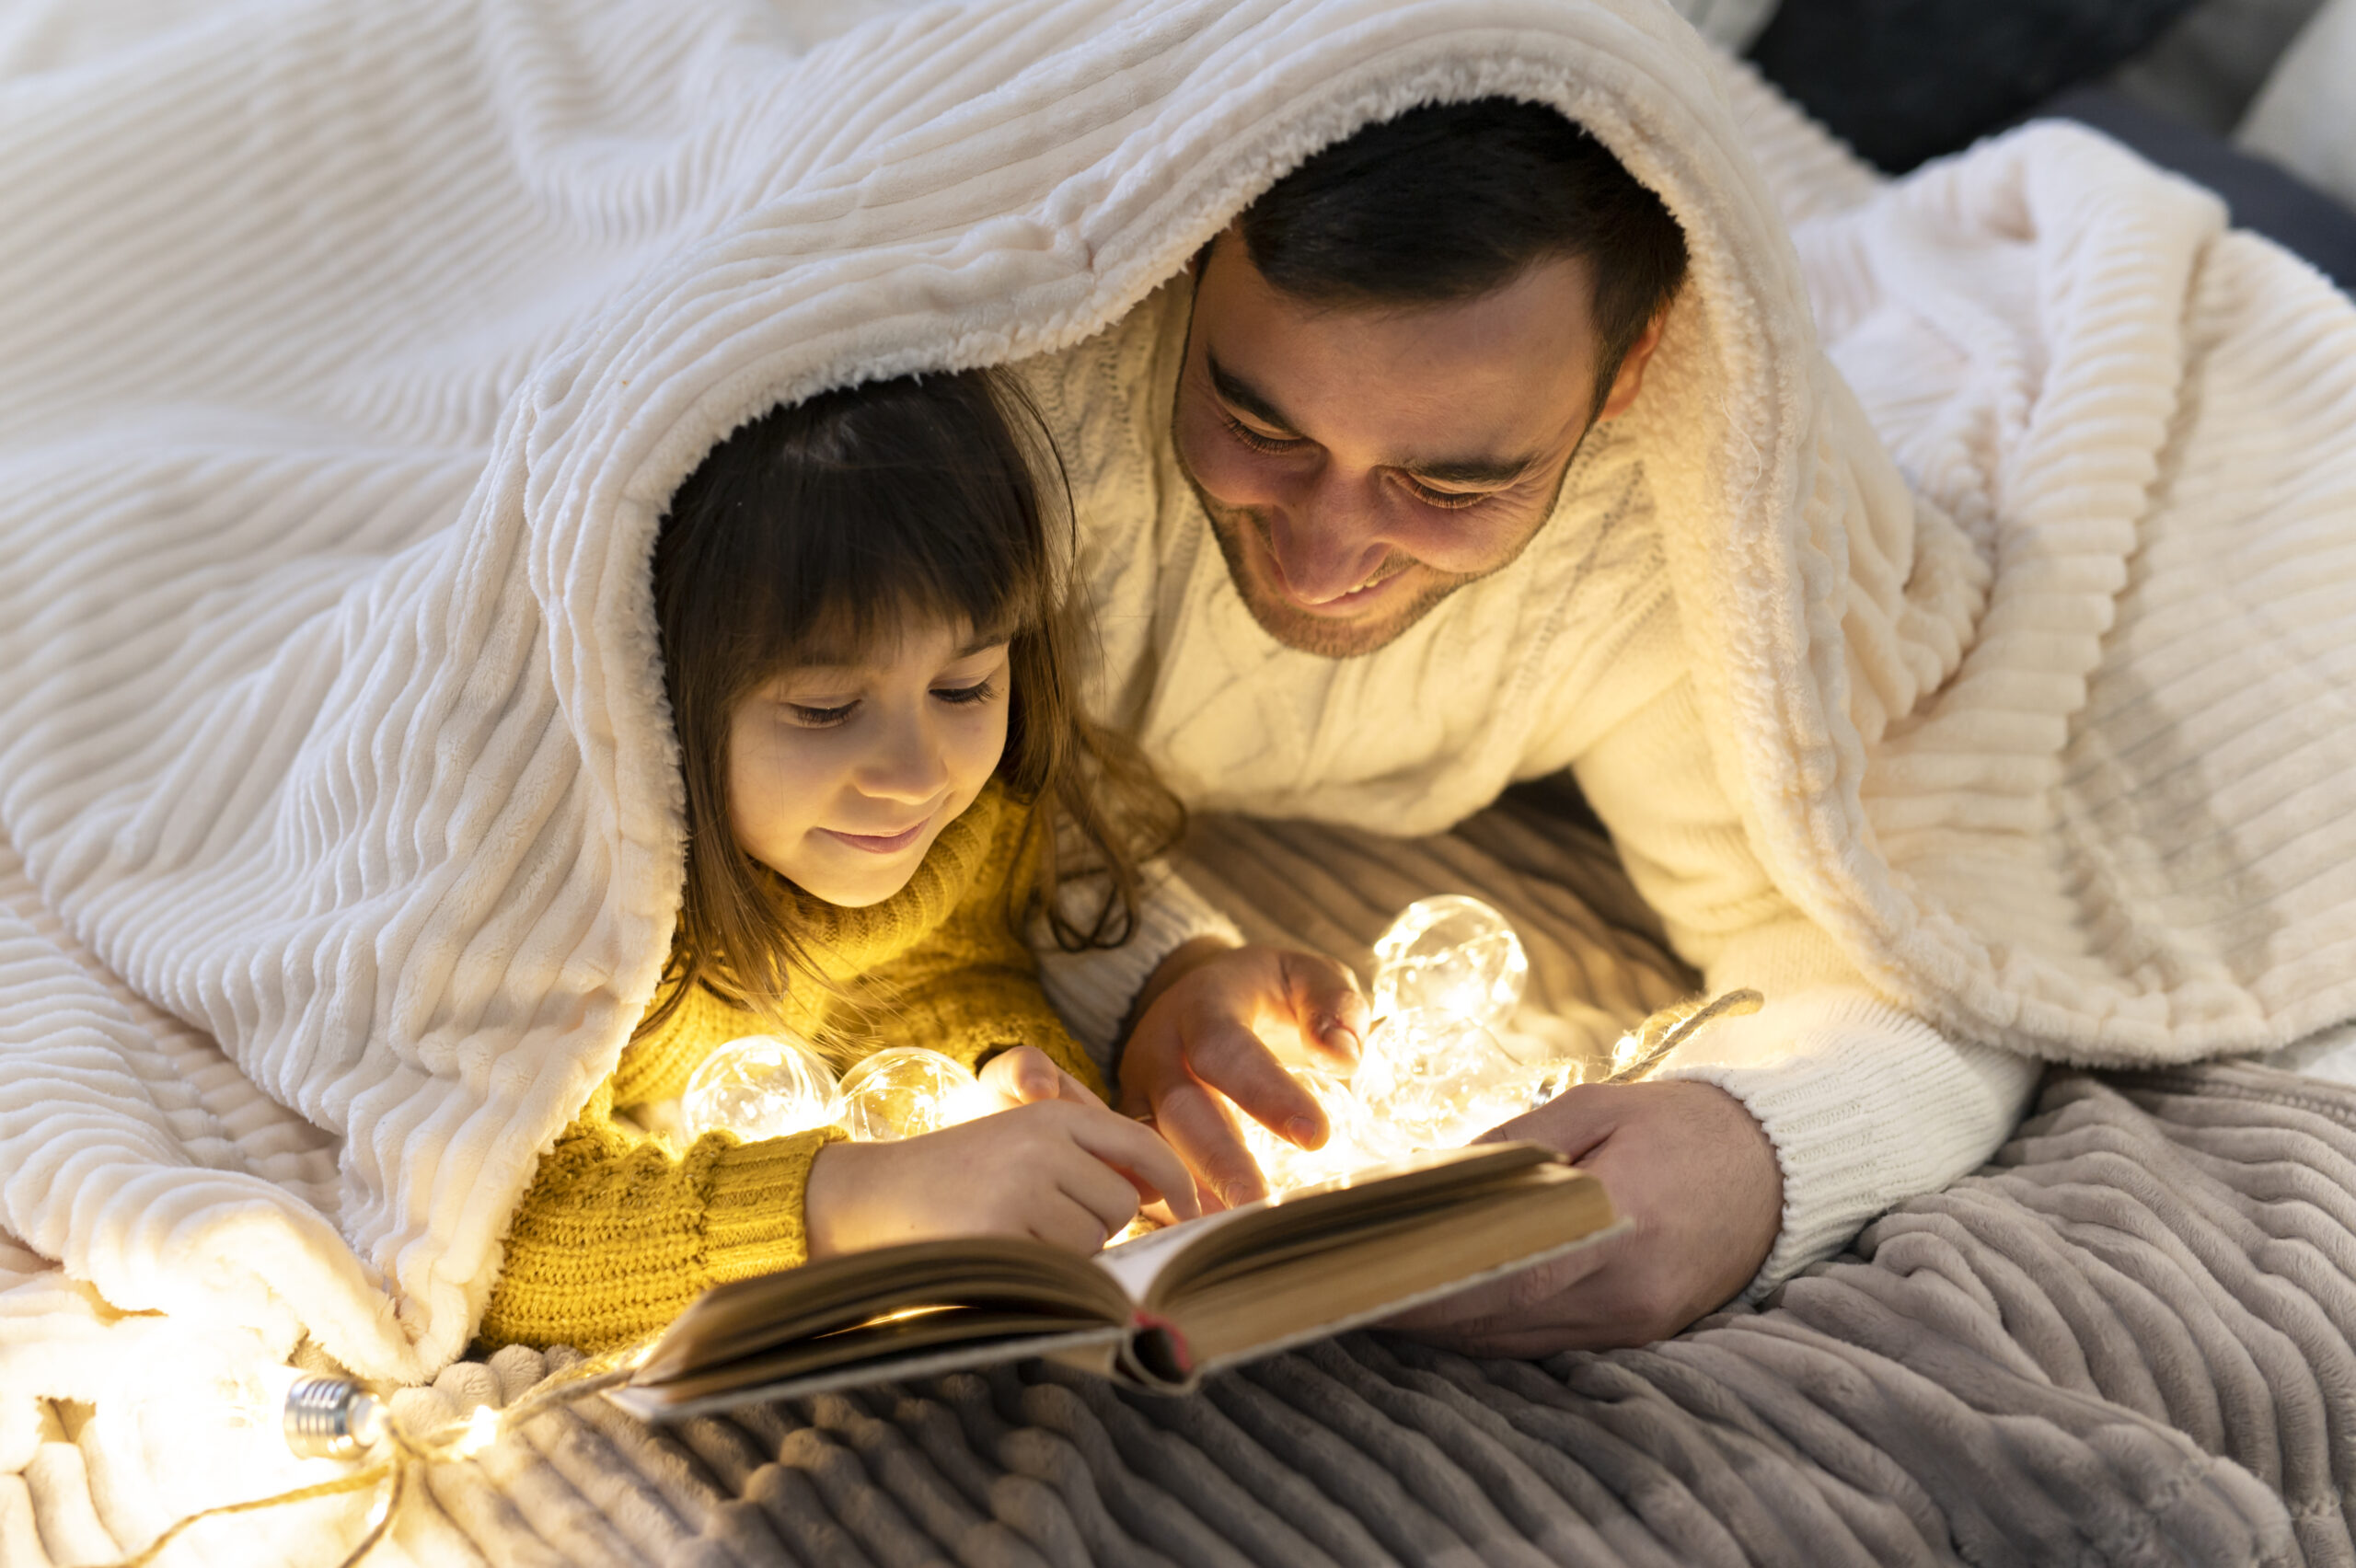 Až príde čas na večerné rituály a budete svoje deti pripravovať na spanie, vezmite si chvíľku na zdieľaný čas s nimi. Zvoľte ich obľúbenú knihu alebo im predstavte nový príbeh. A nezabudnite, v tých chvíľach pre nich robíte oveľa viac, než len pripomínate známy príbeh.